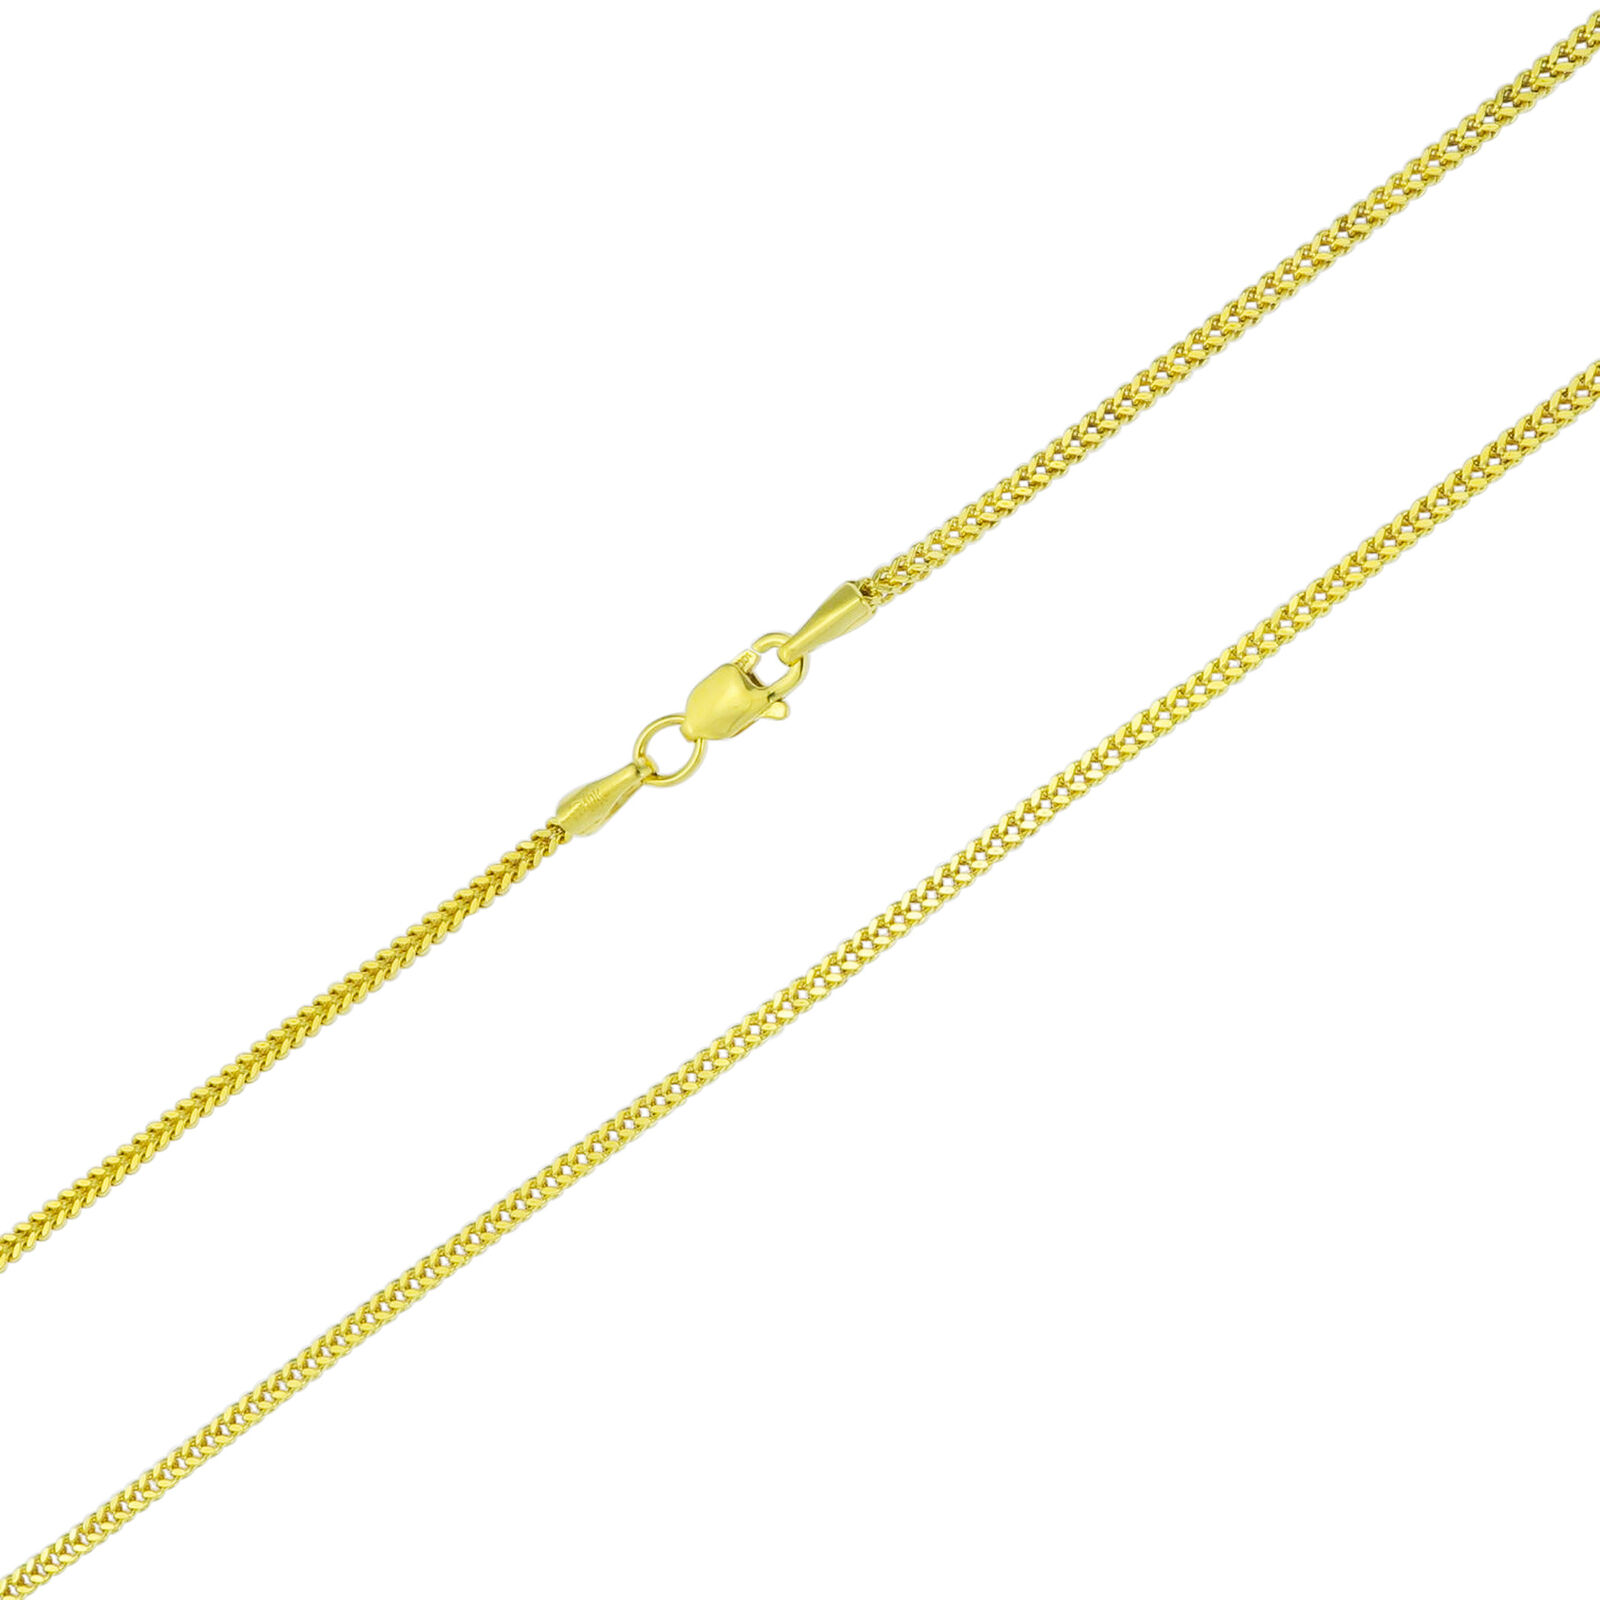 10K イエロー ゴールド 約1.5mm 約56cm ネックレス ロープ チェーン ペンダントのサムネイル